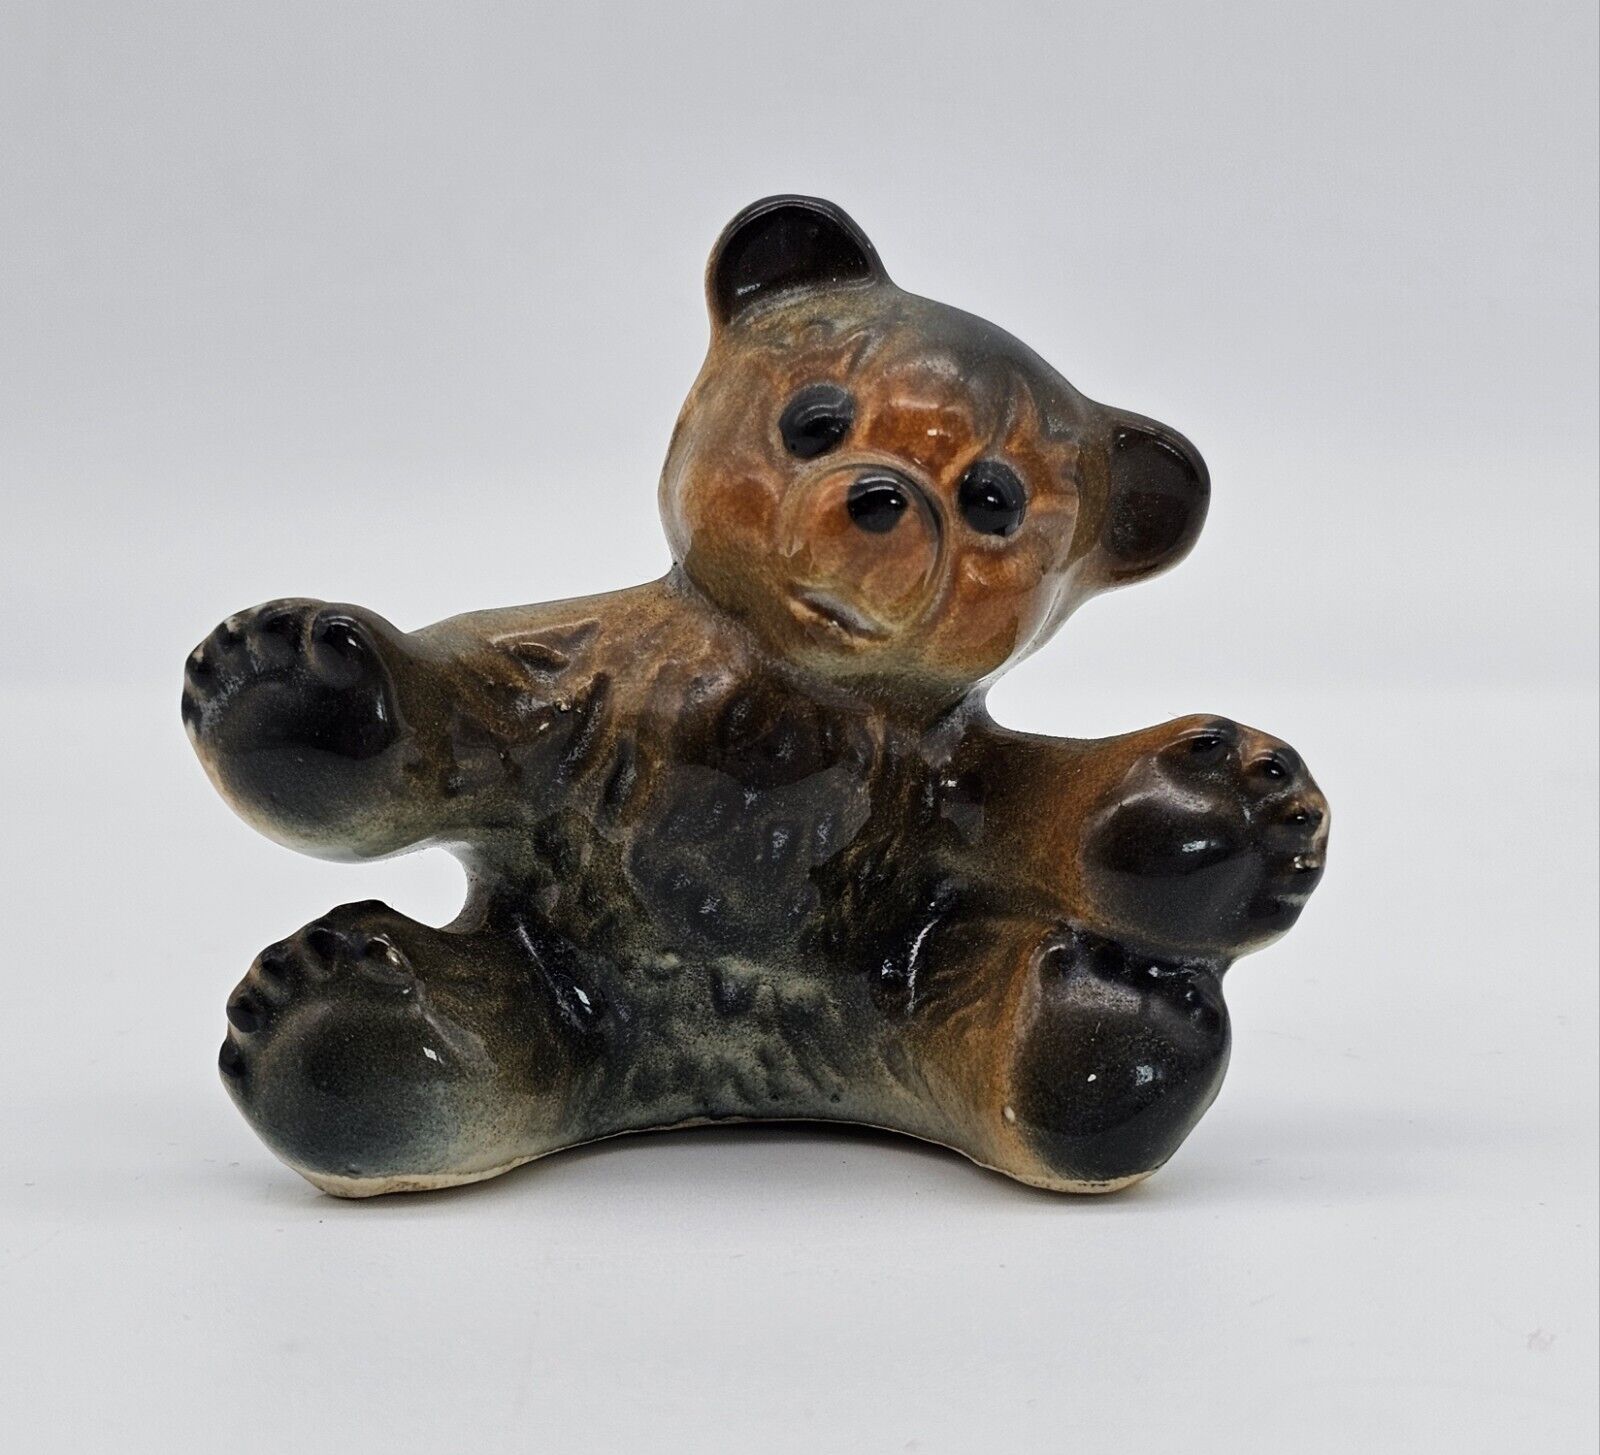 Vintage Porcelain Teddy Bear Figurine 3-in Tall Kitschy Cute